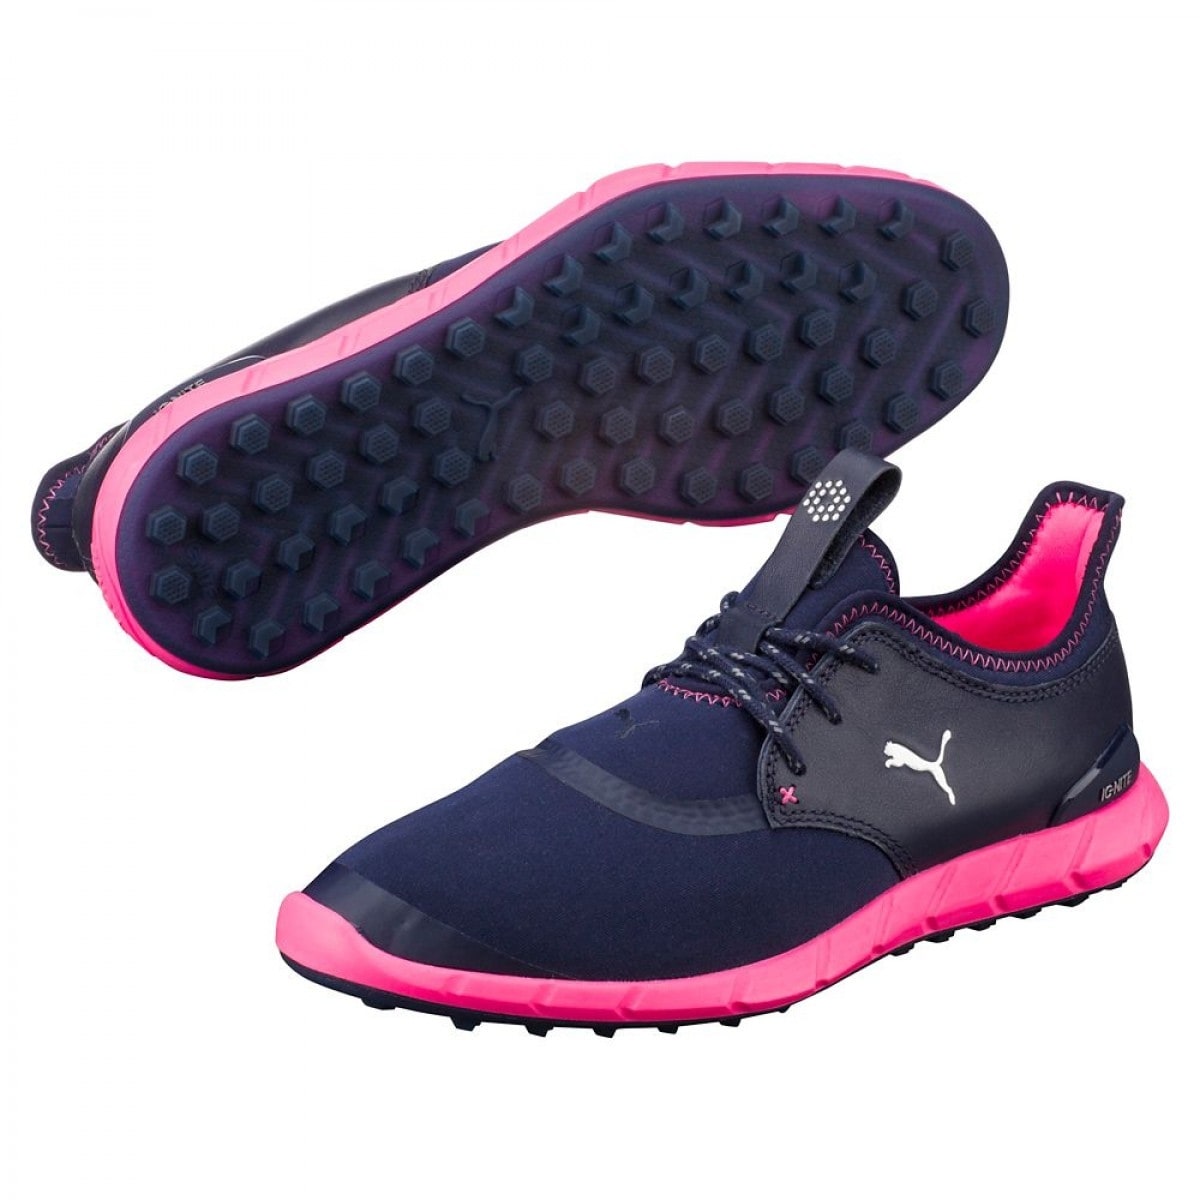 puma womens golf shoes on sale